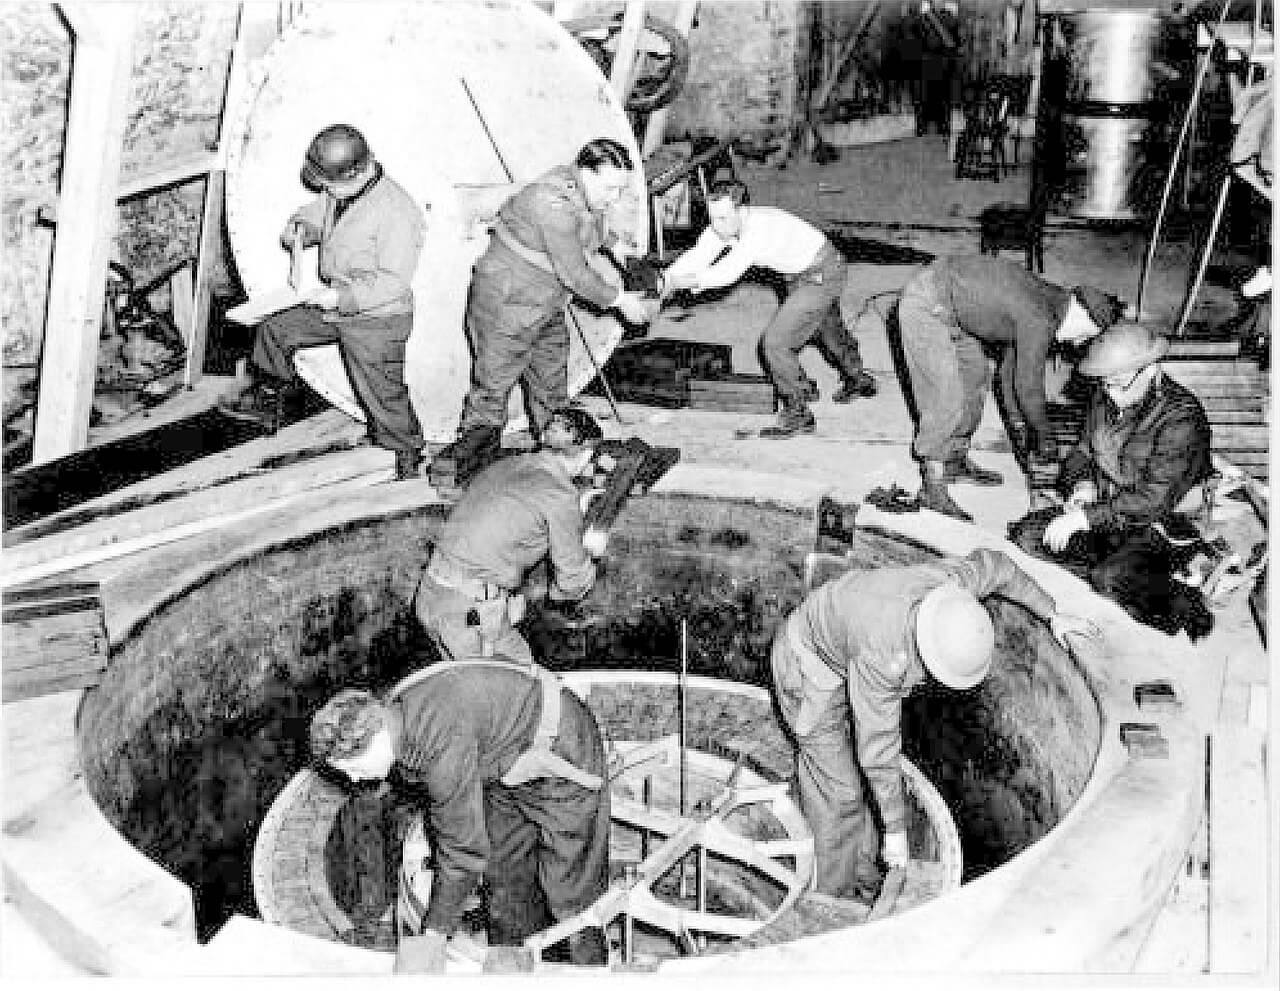 פירוק הכור הגרעיני בהייגרלוך, גרמניה, אפריל 1945. מתוך ויקיפדיה